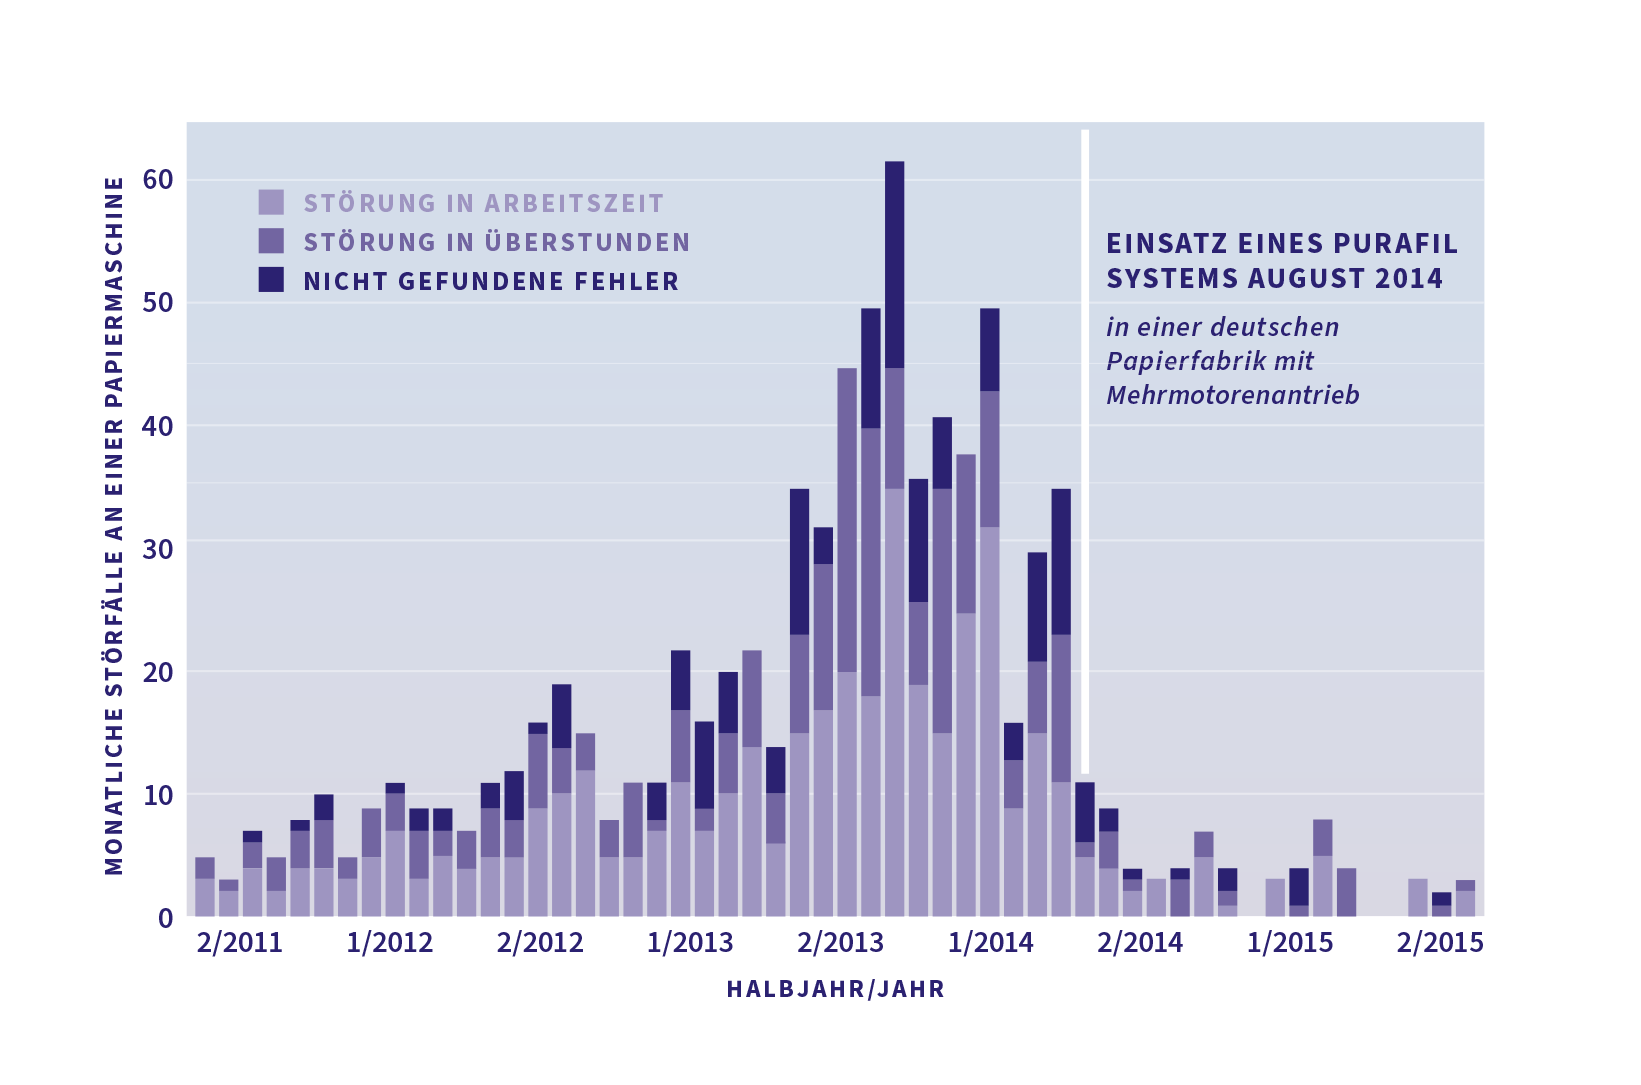 Statistik über den Einsatz eines Purafil-Systems im August 2014 zum Schutz vor Elektrokorrosion.